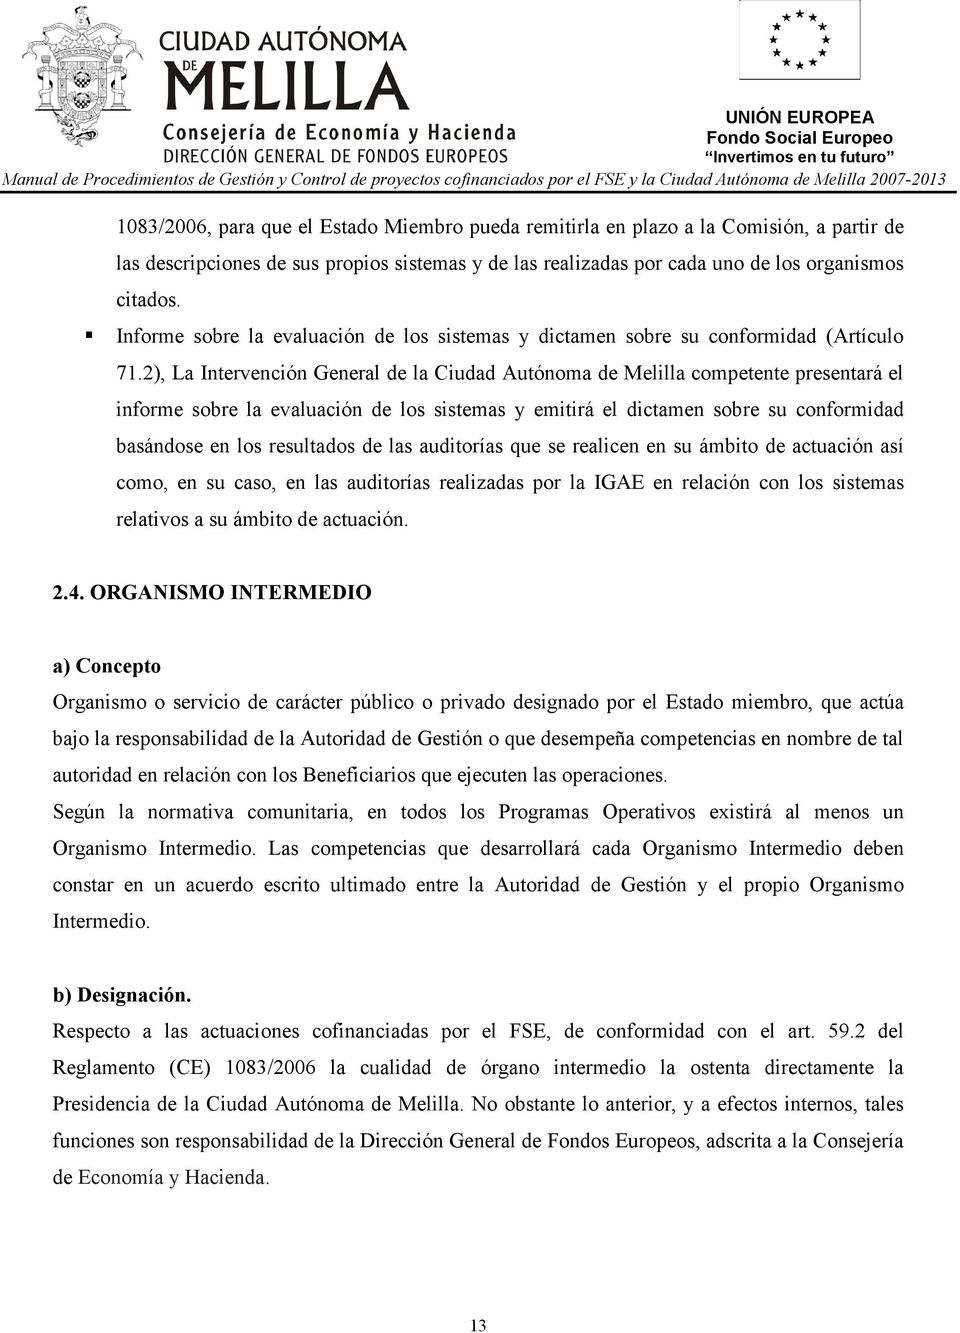 2), La Intervención General de la Ciudad Autónoma de Melilla competente presentará el informe sobre la evaluación de los sistemas y emitirá el dictamen sobre su conformidad basándose en los